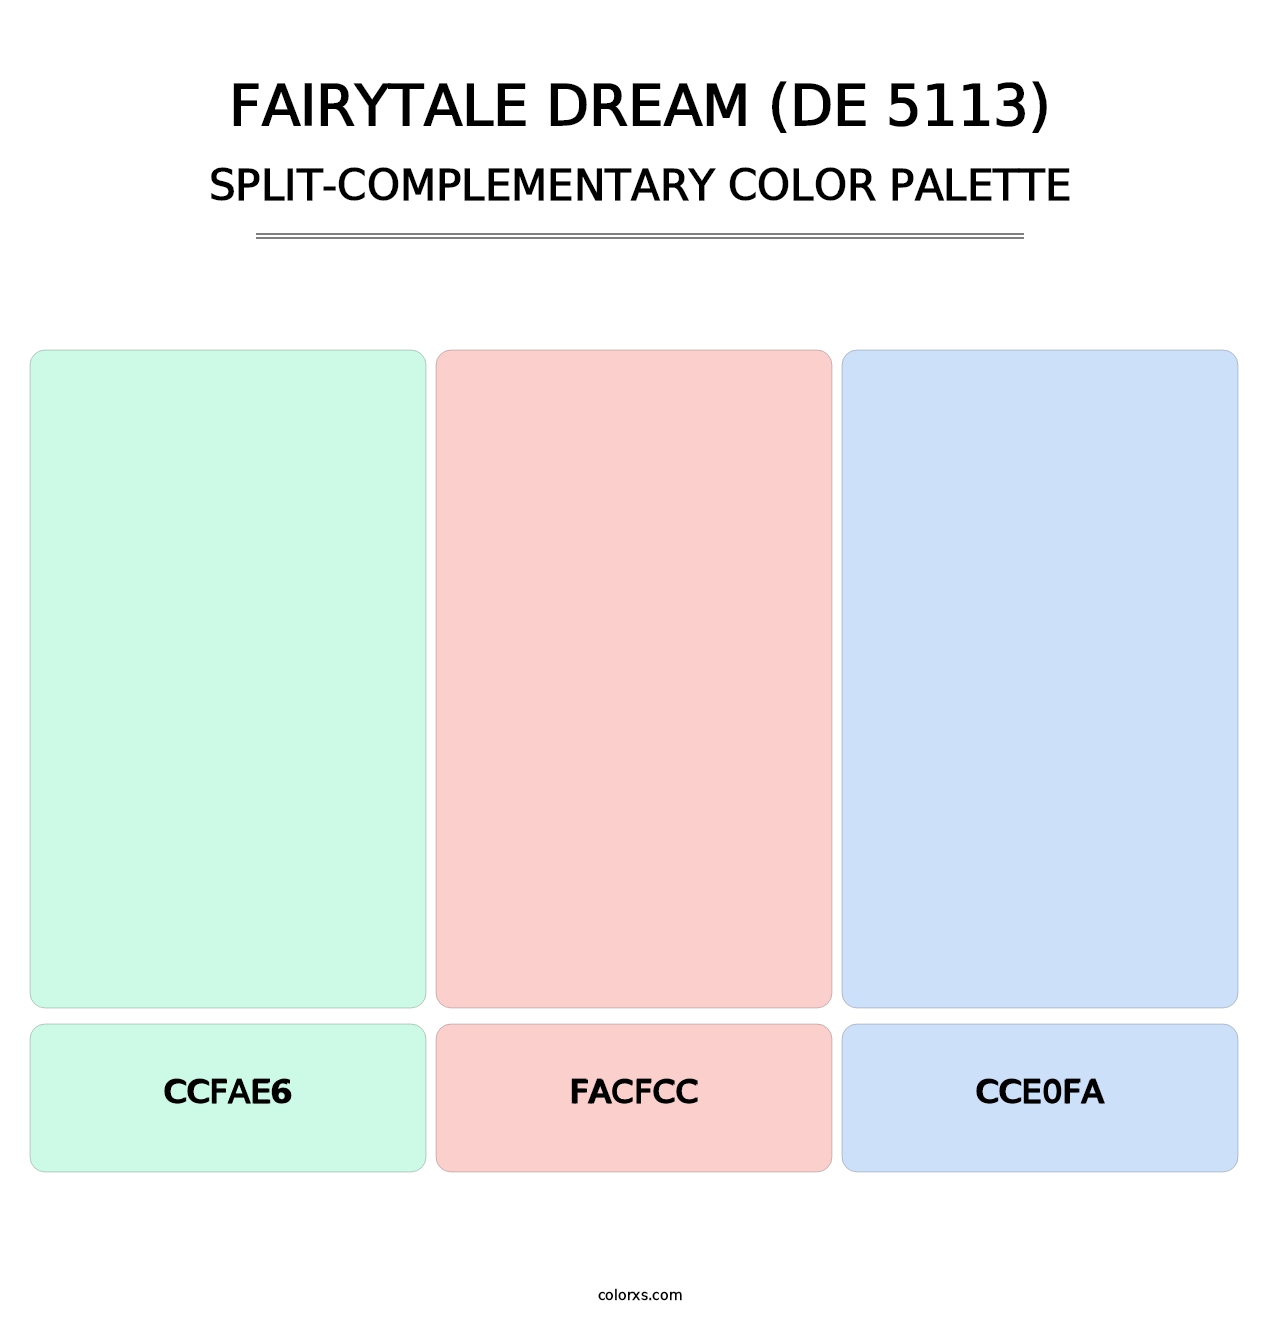 Fairytale Dream (DE 5113) - Split-Complementary Color Palette